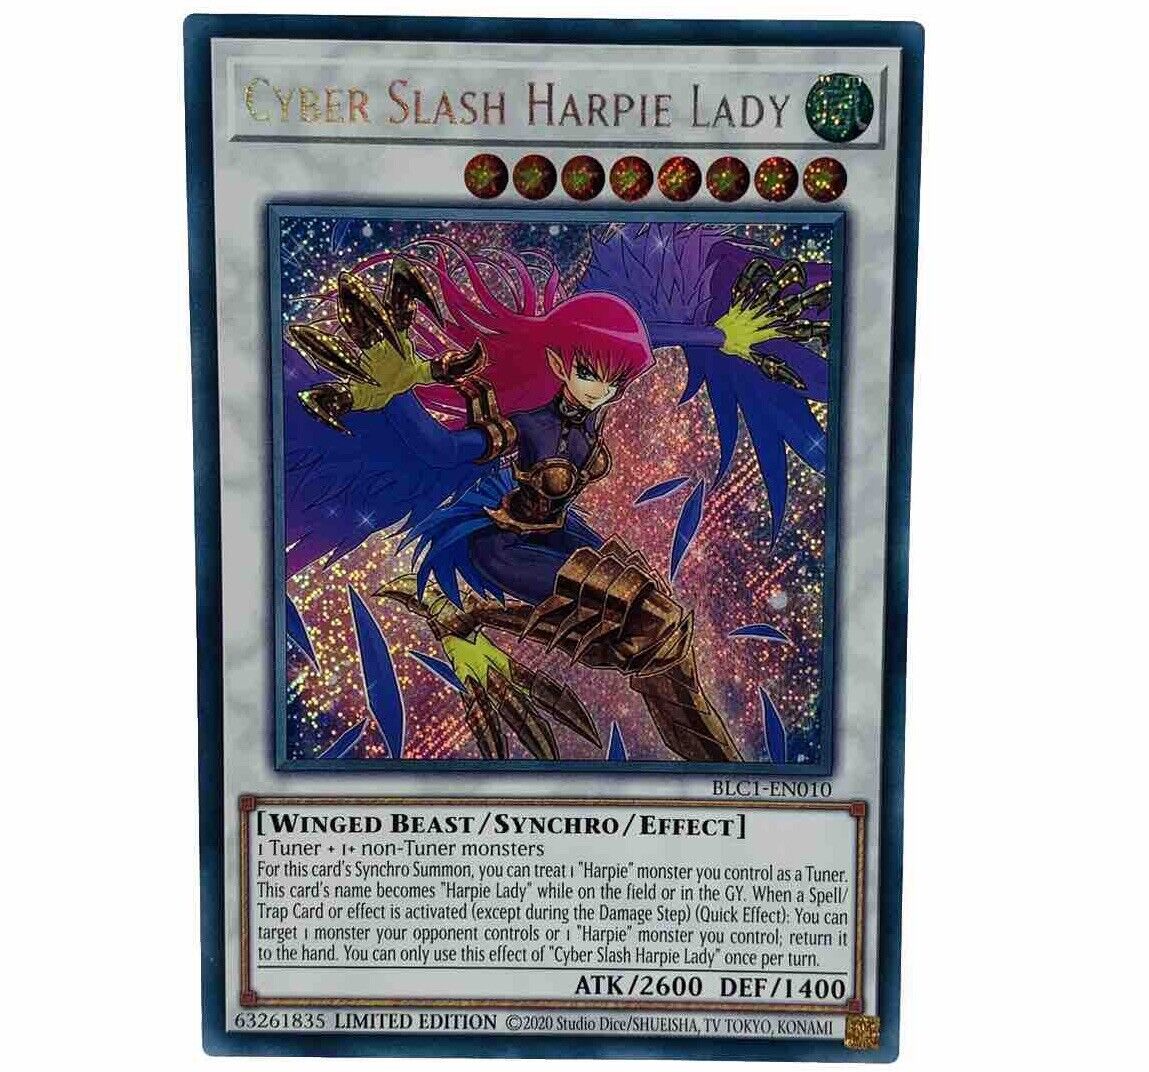 YUGIOH Cyber Slash Harpie Lady BLC1-EN010 Secret Rare Card Limited Edition MINT